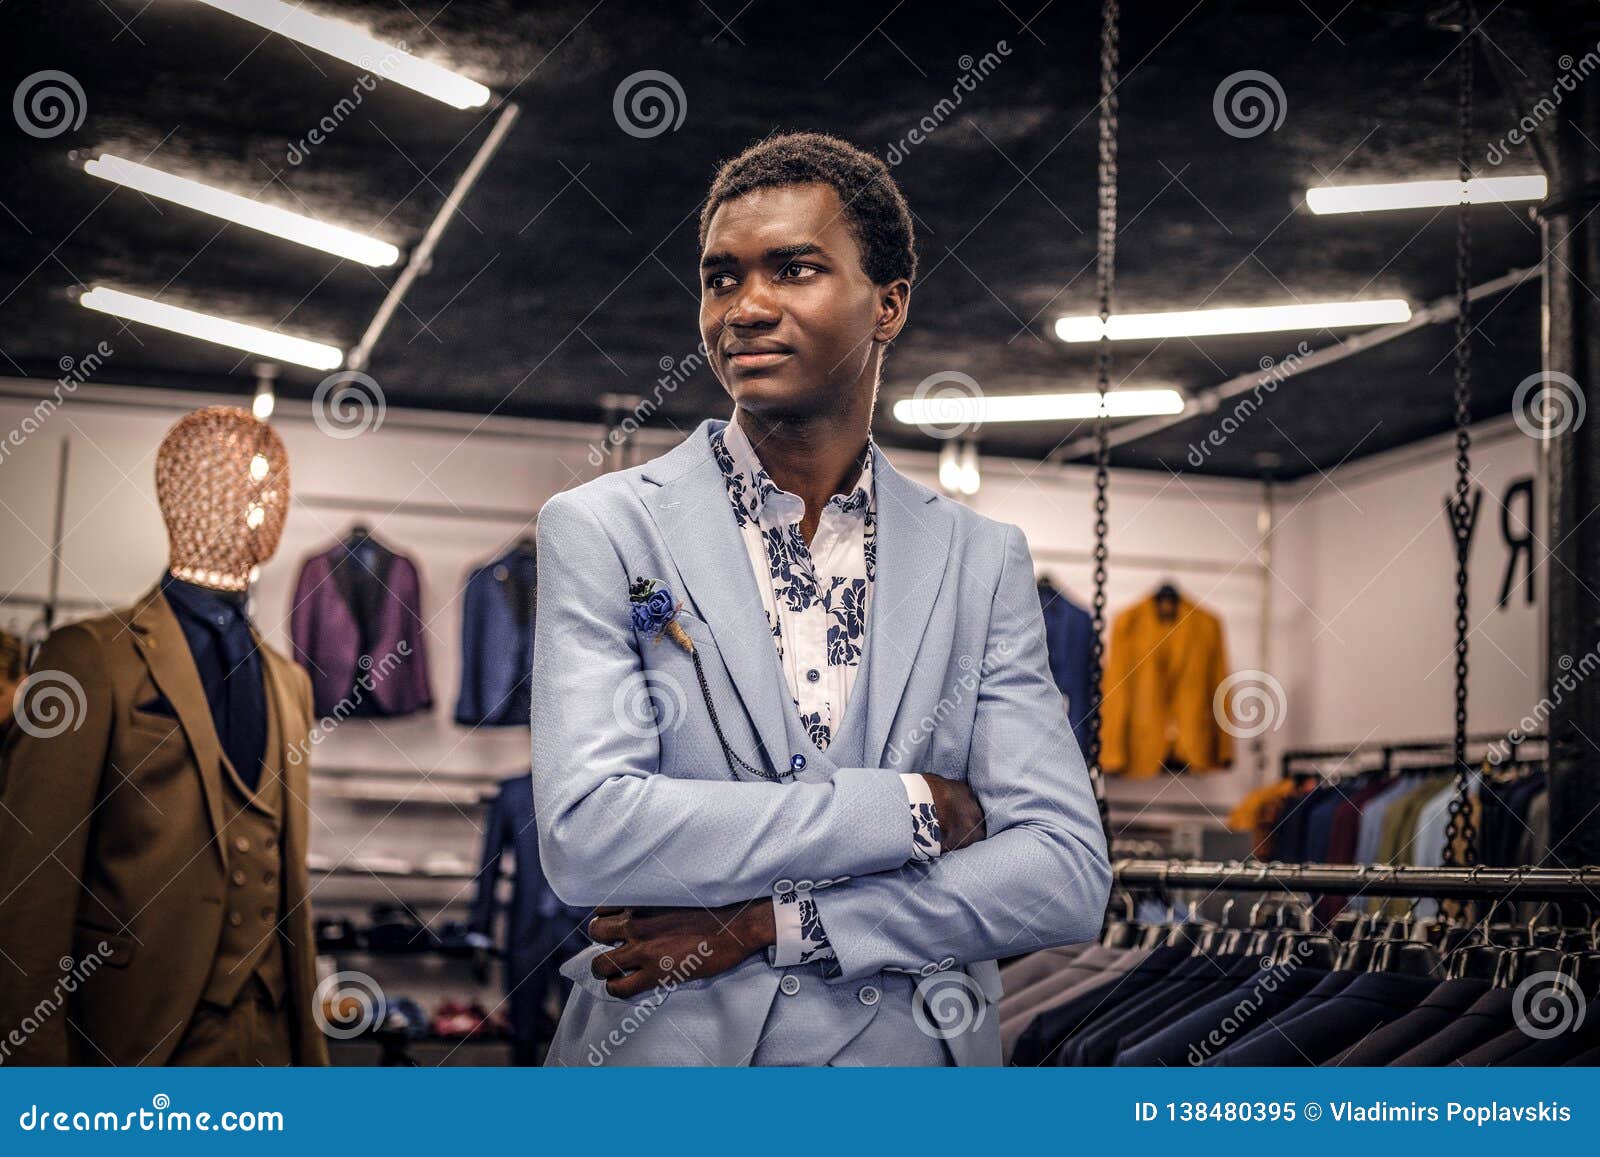 African-American Man Dressed in Blue Elegant Suit Posing with Crossed ...